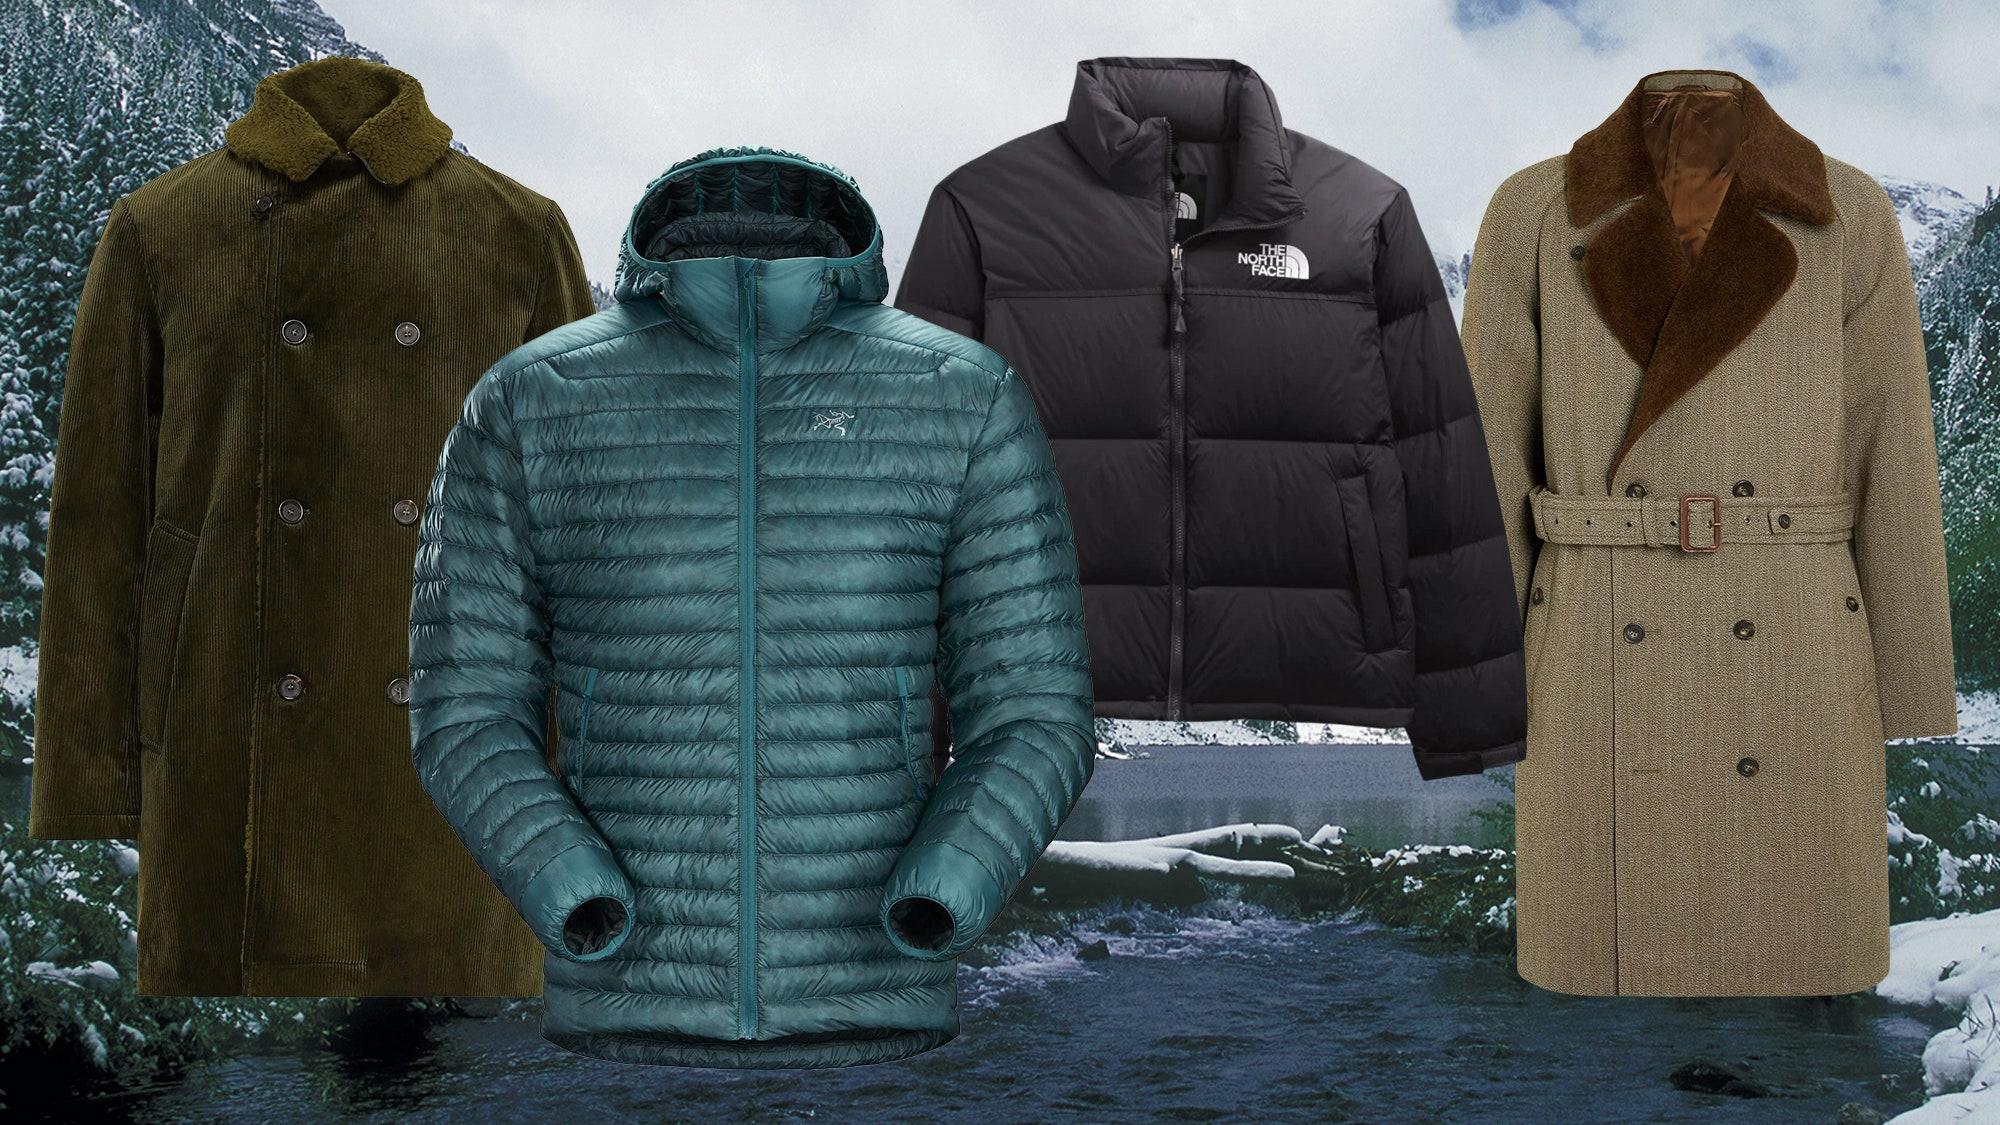 Which jacket is warmest in winter?